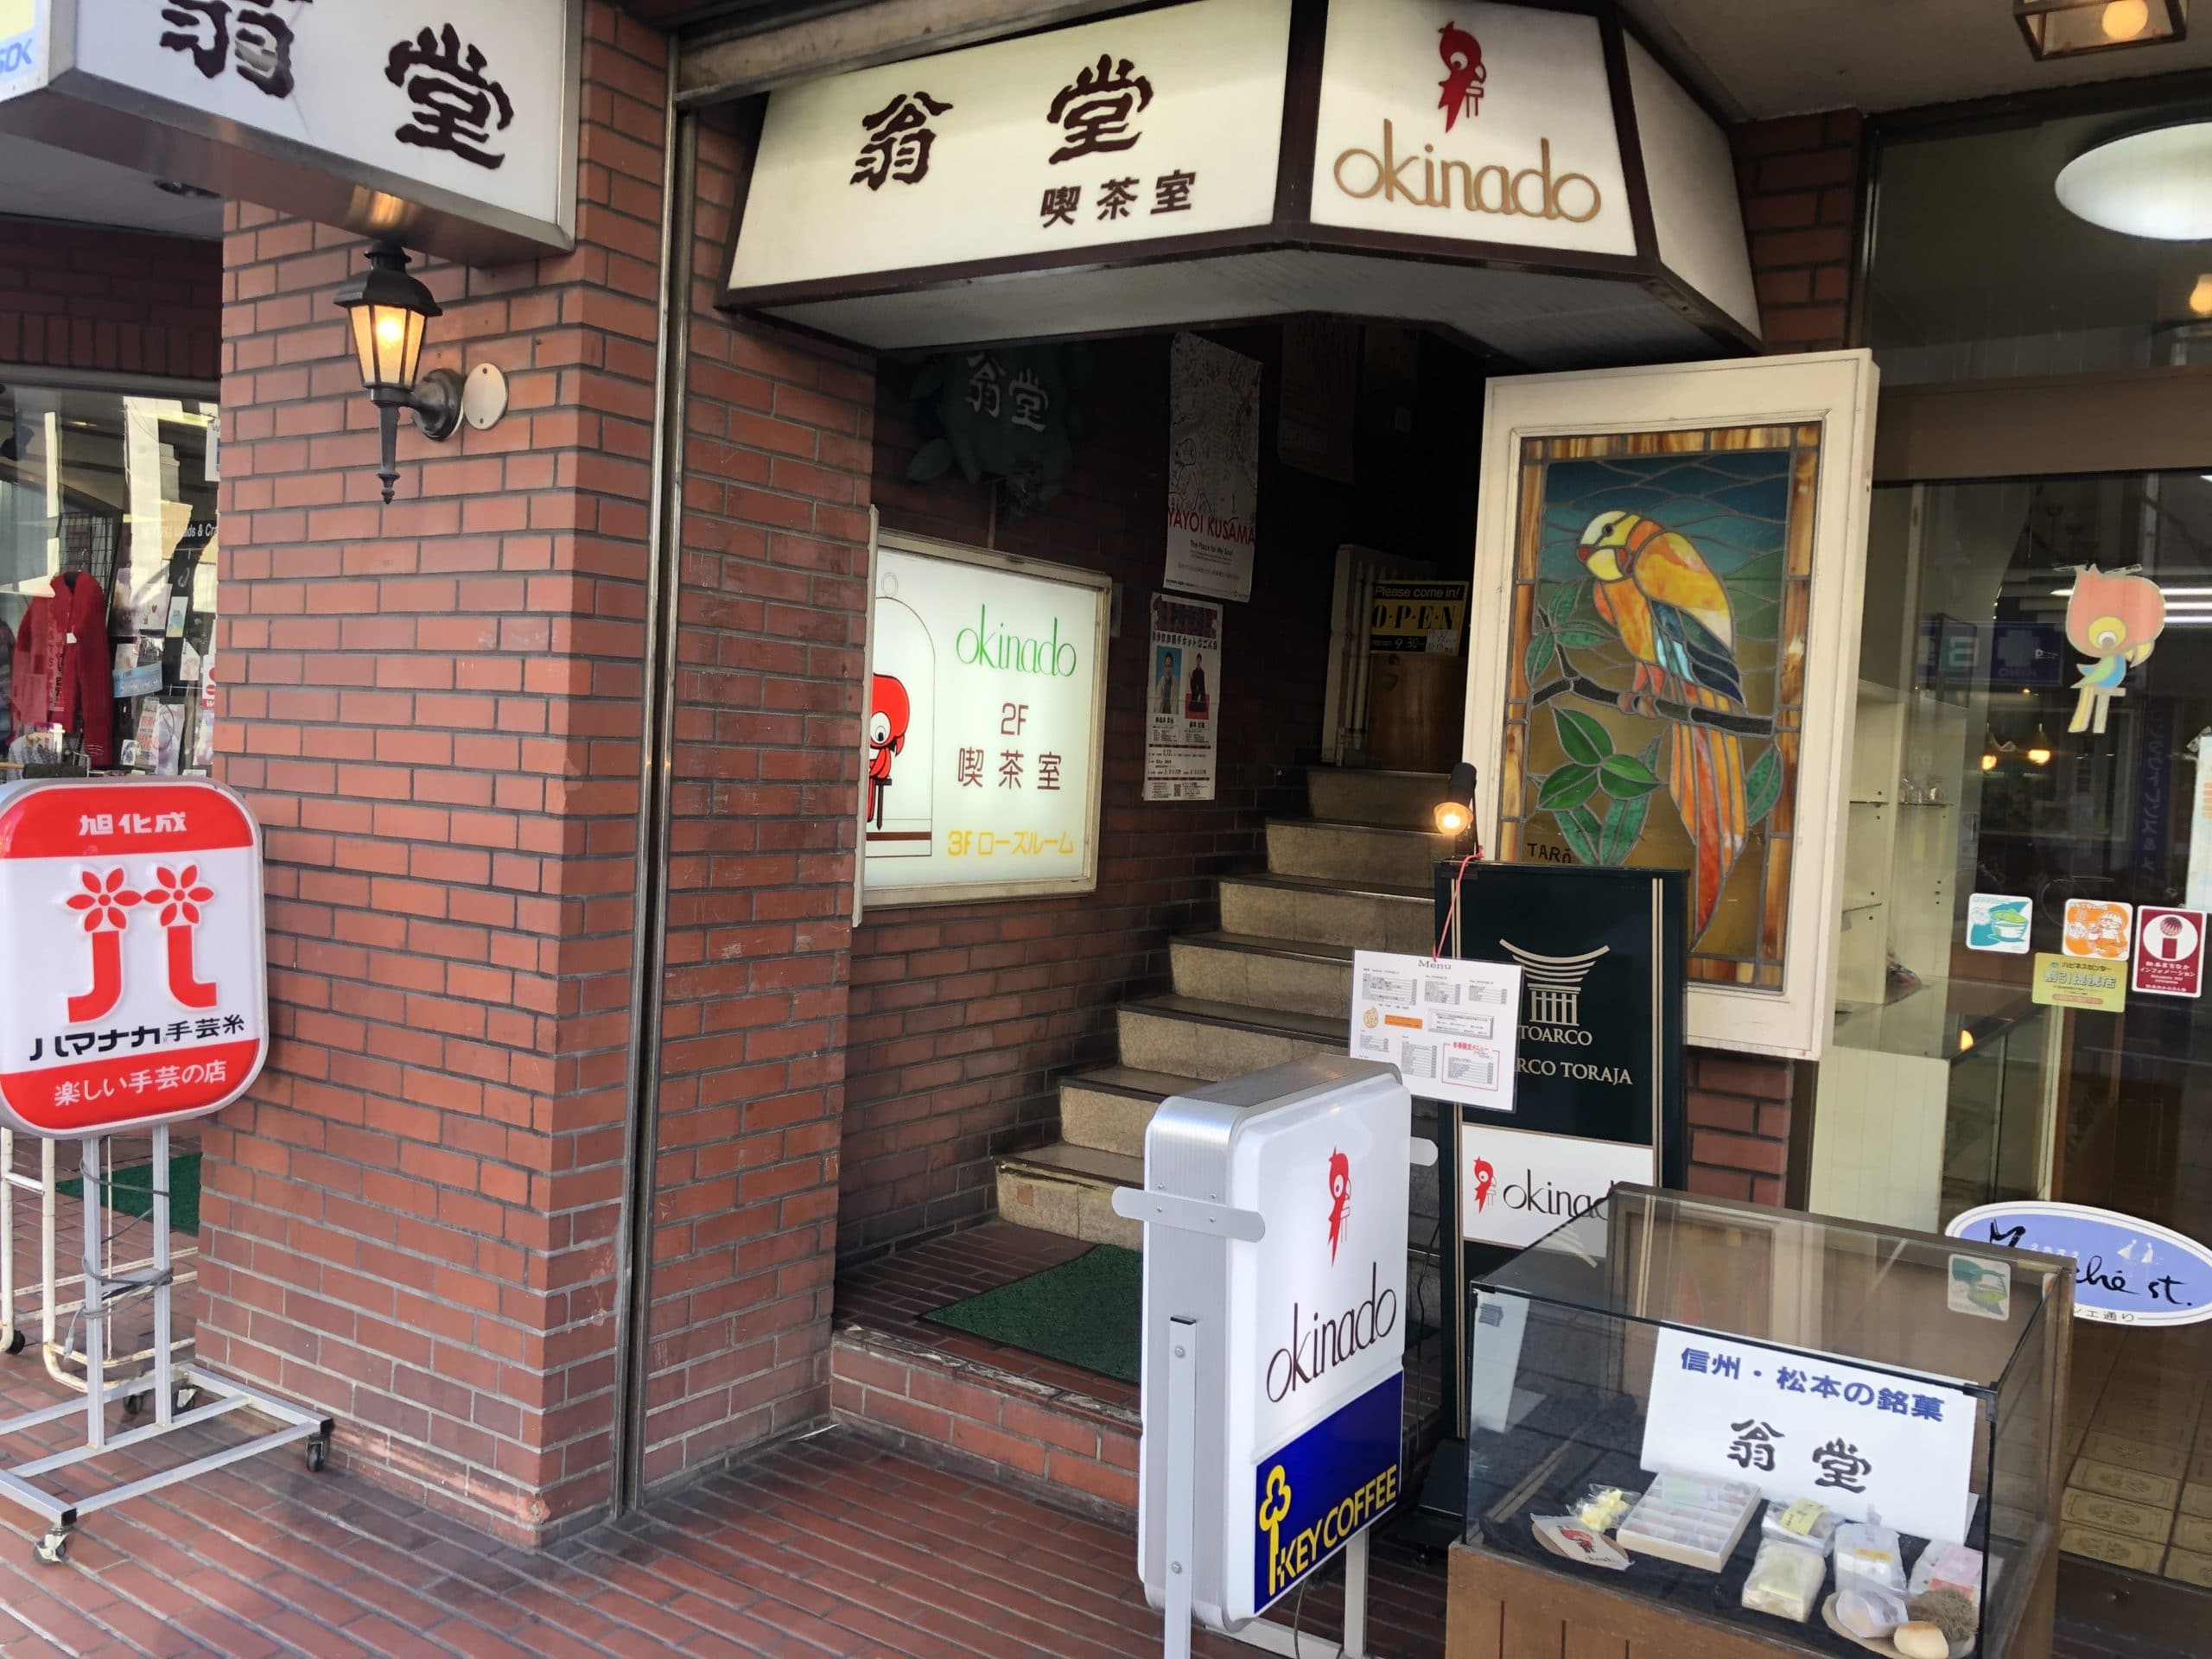 【松本駅前】翁堂喫茶室のナポリタンのボリュームがとんでもない件